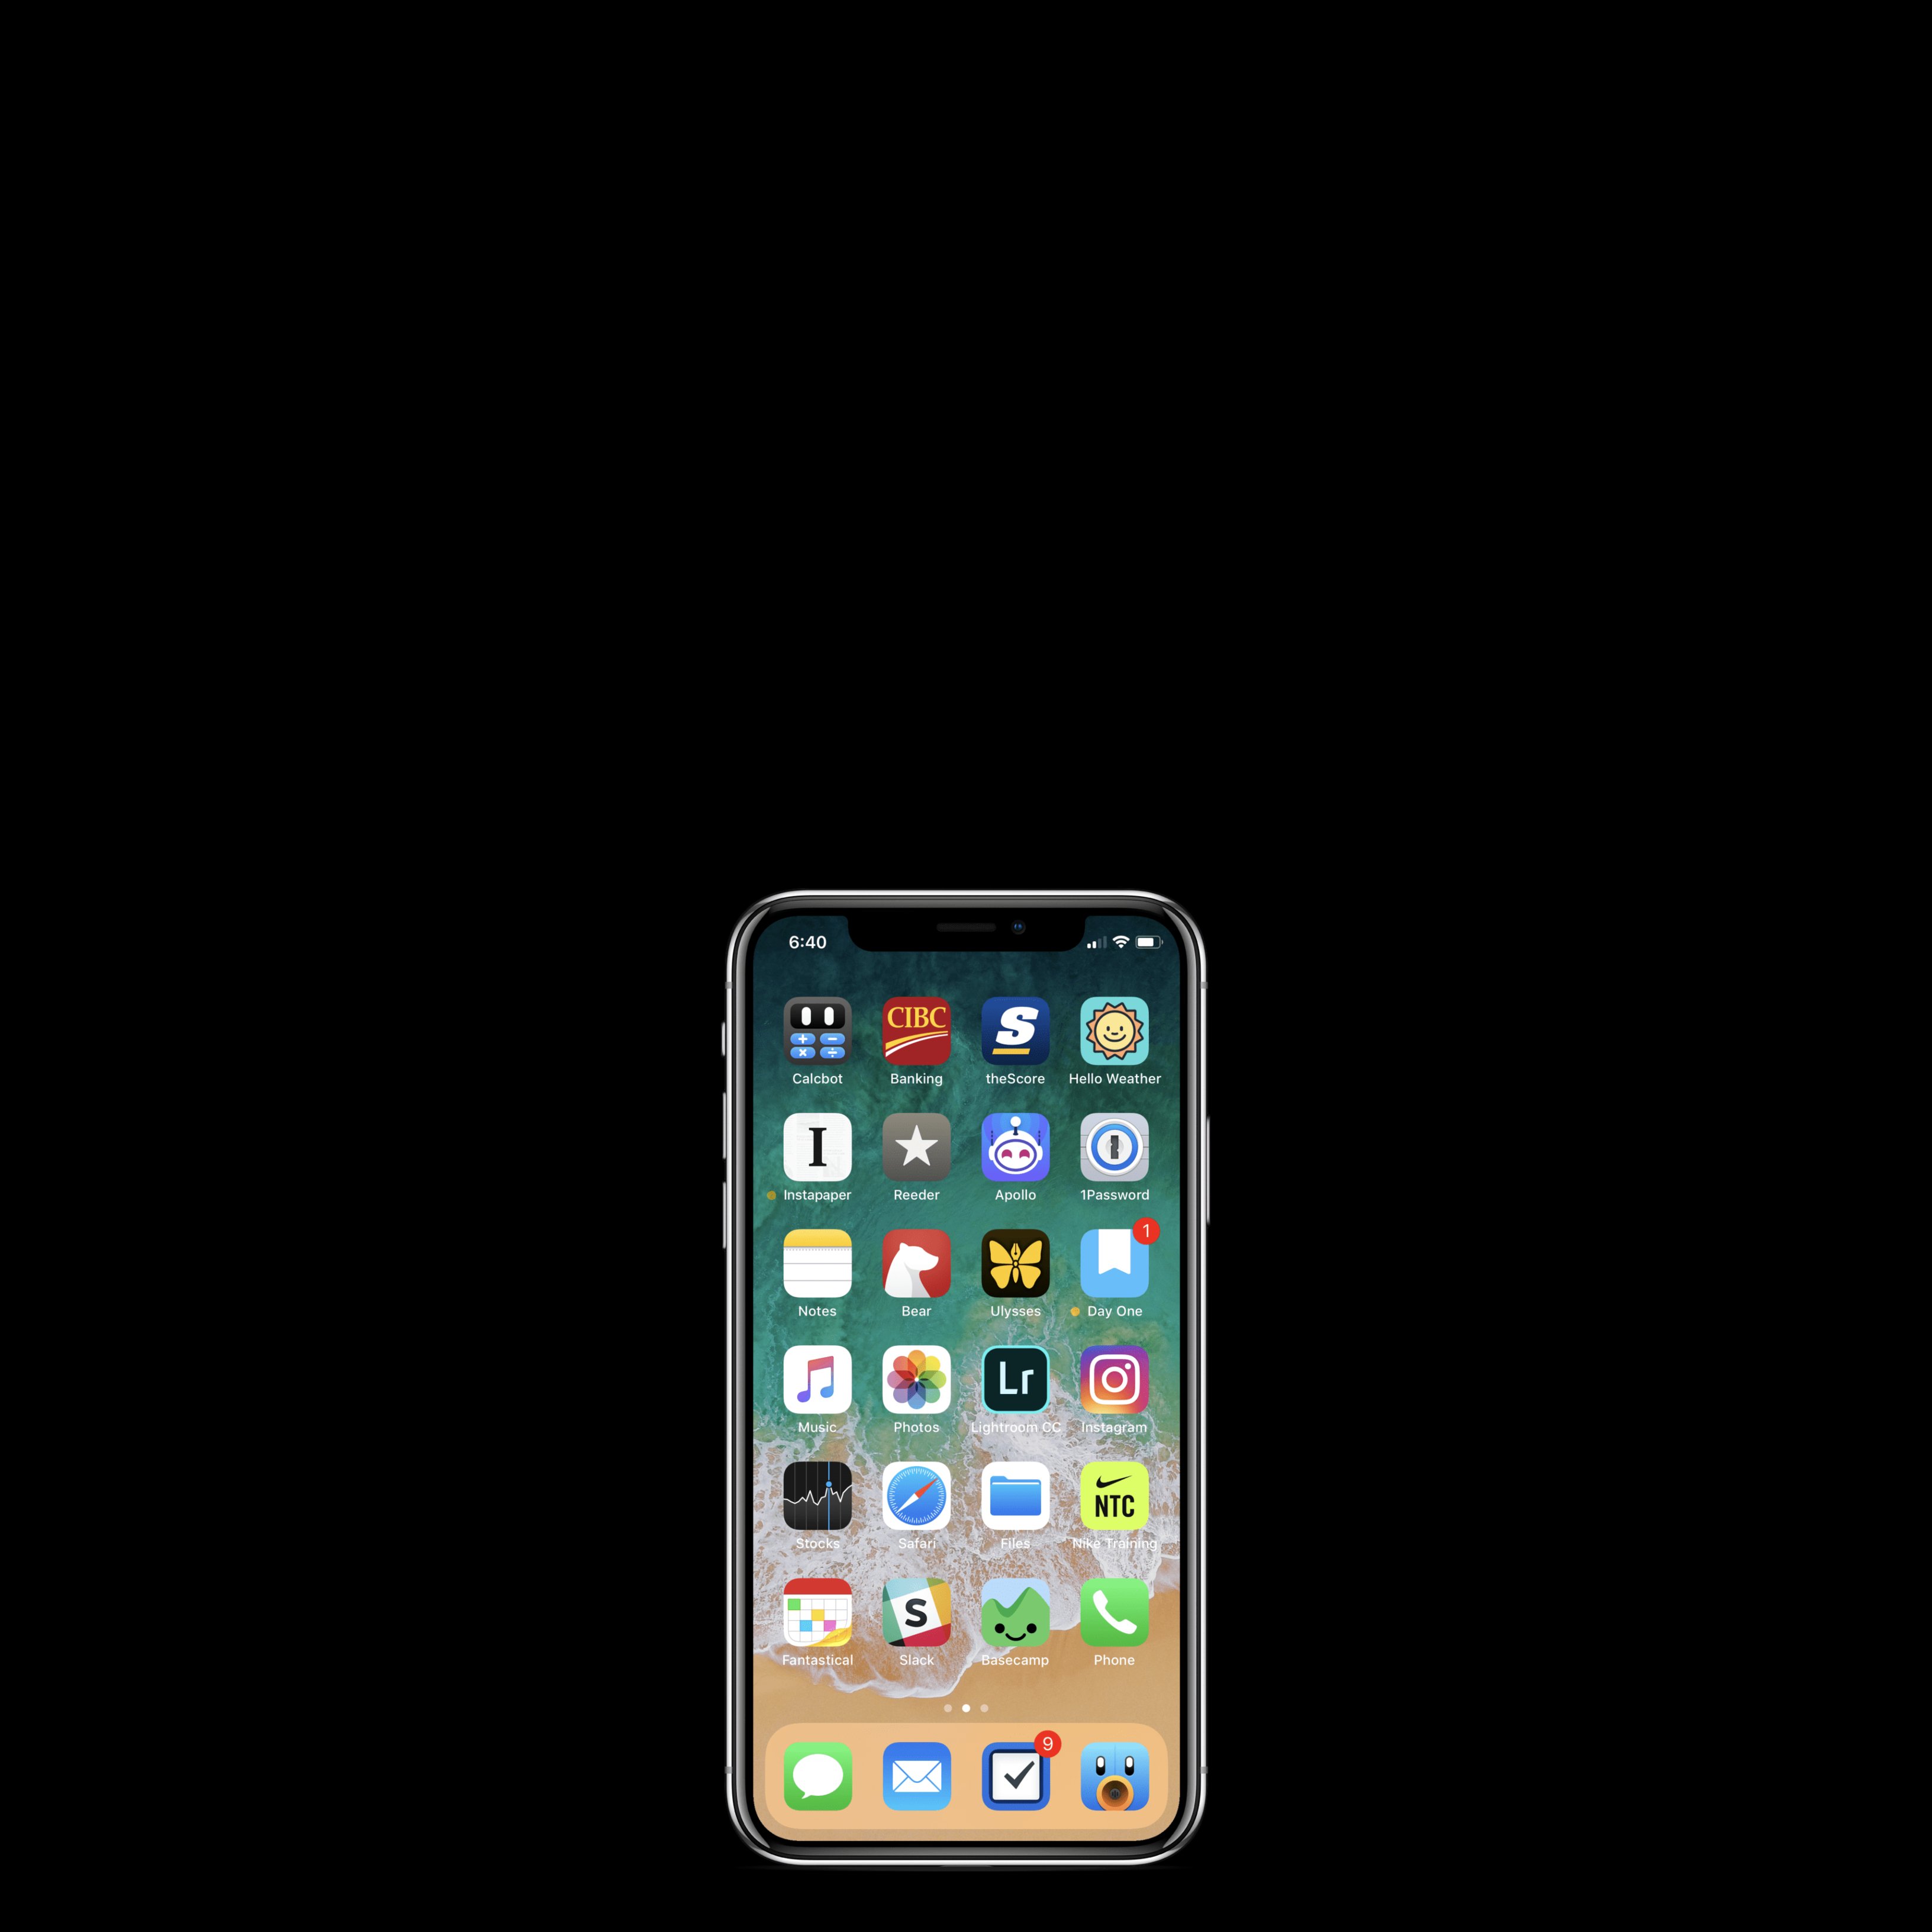 Si tens un iPhone, descarrega't ja la nova versió de sistema operatiu: iOS 13